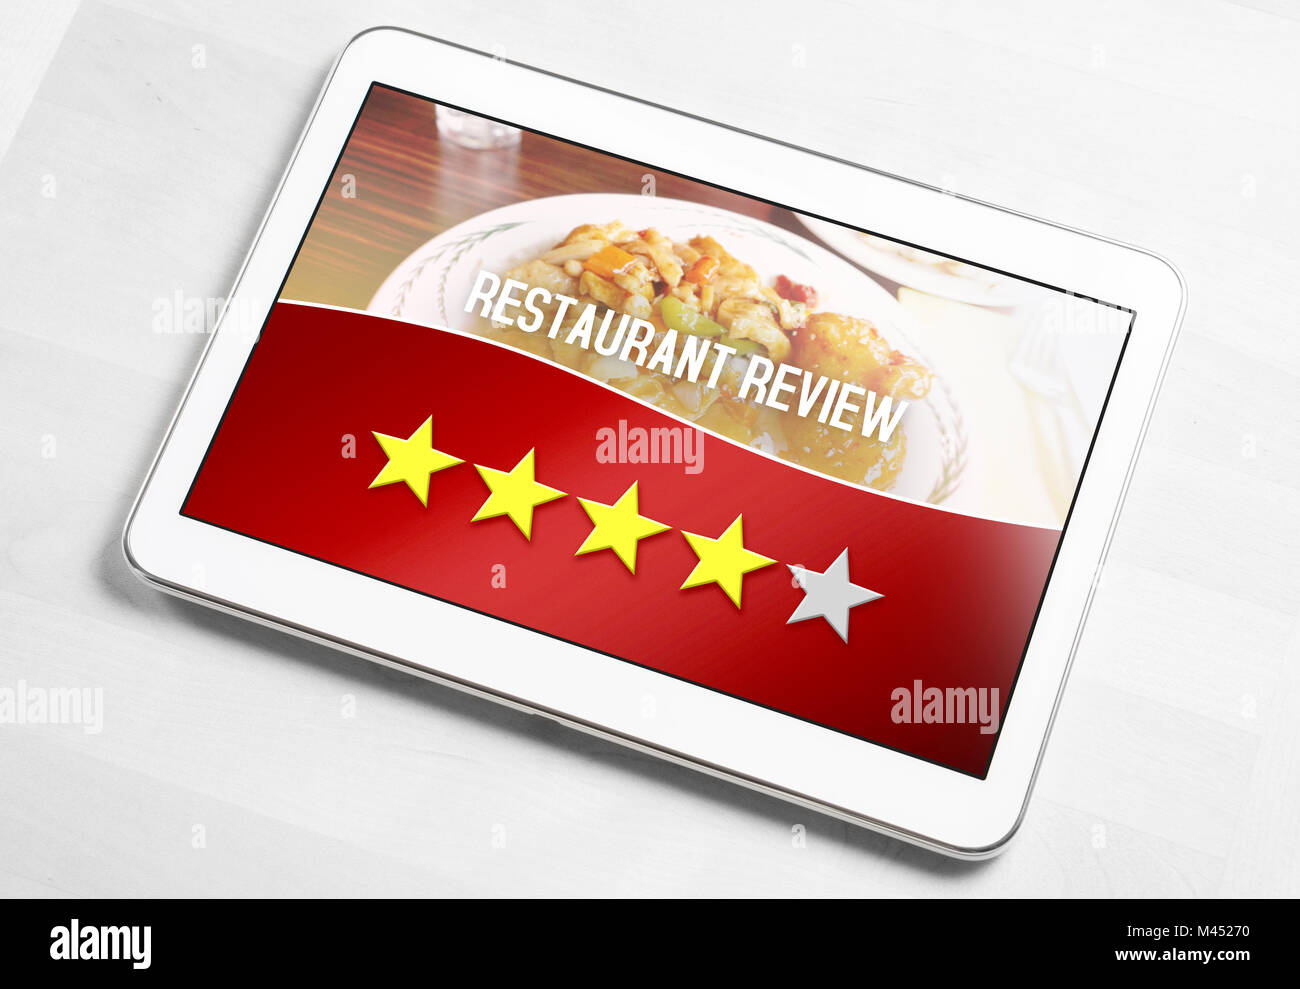 Gutes Restaurant Review von zufriedenen und glücklichen Kunden und Kritiker. Bewertet vier von fünf Sternen. Mobiles Gerät auf dem Tisch. Stockfoto